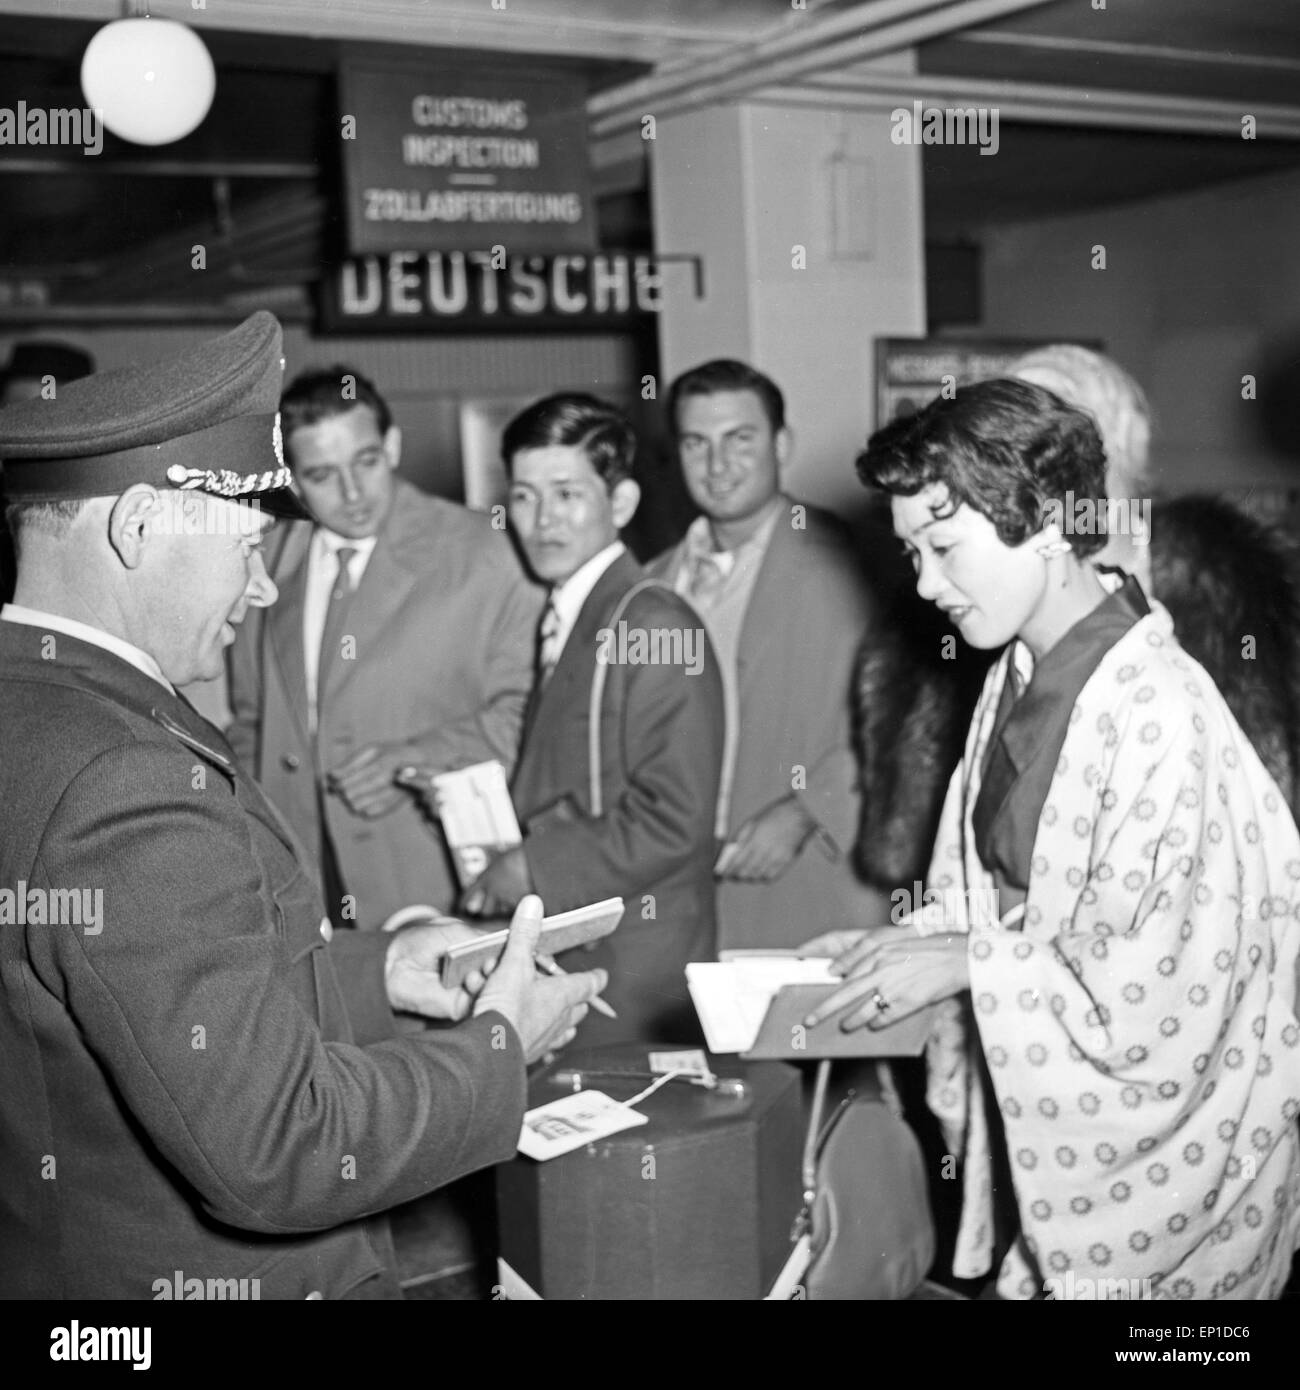 Sängerin Butterfly aus Japan wird am Flughafen Hamburg empfangen, Deutschland 1950er Jahre. Female Japanese singer Butterfly Stock Photo